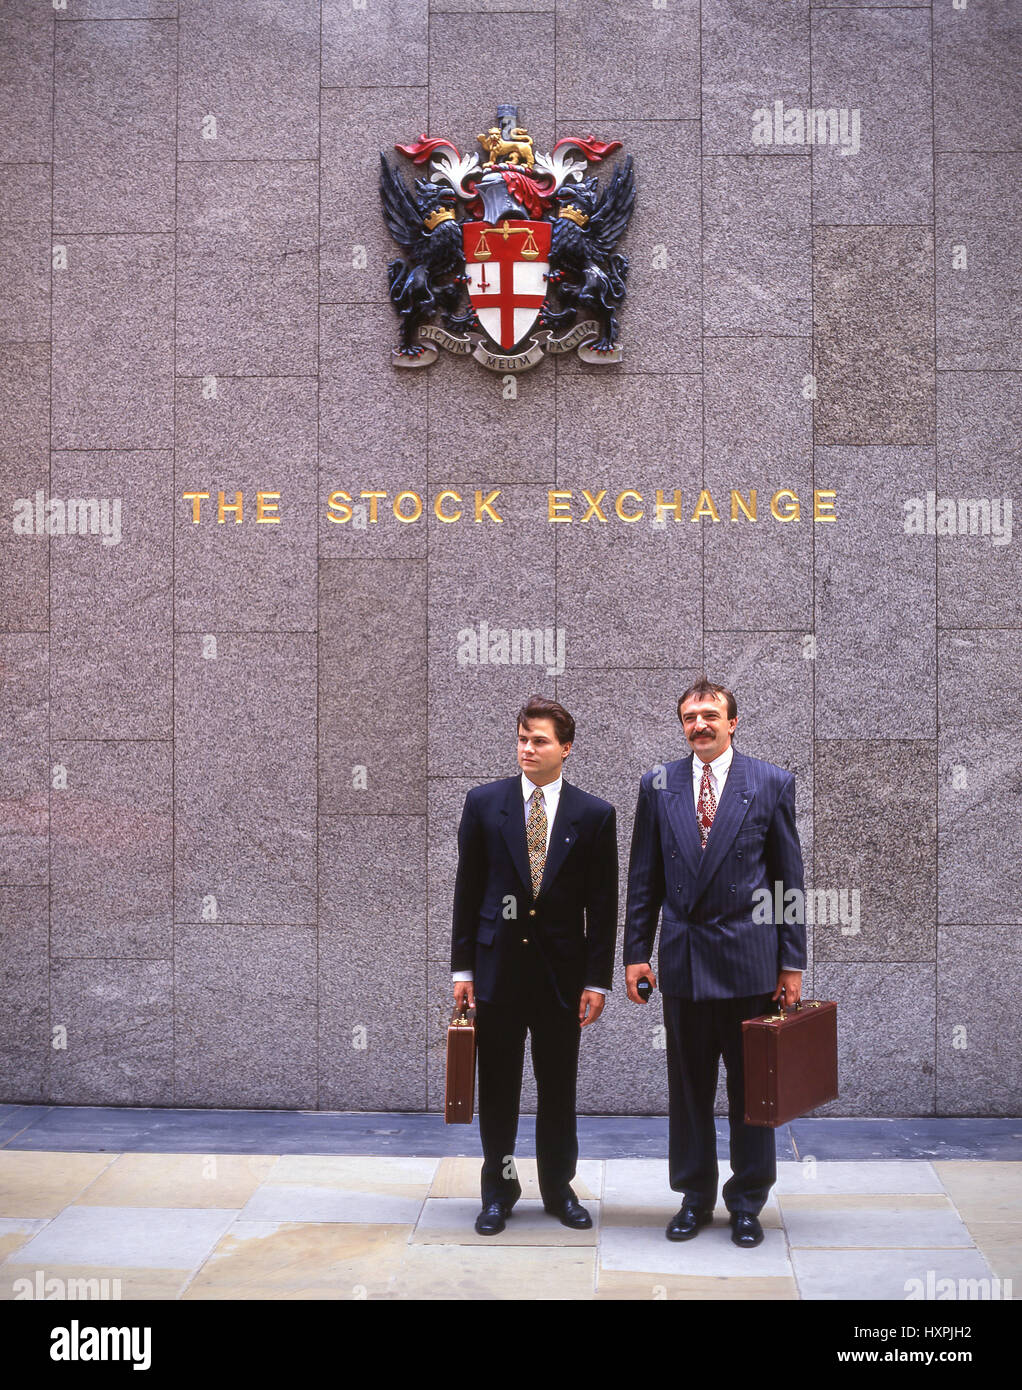 Les hommes d'affaires à l'extérieur de l'ancienne Bourse de Londres, Threadneedle Street, City of London, Greater London, Angleterre, Royaume-Uni Banque D'Images